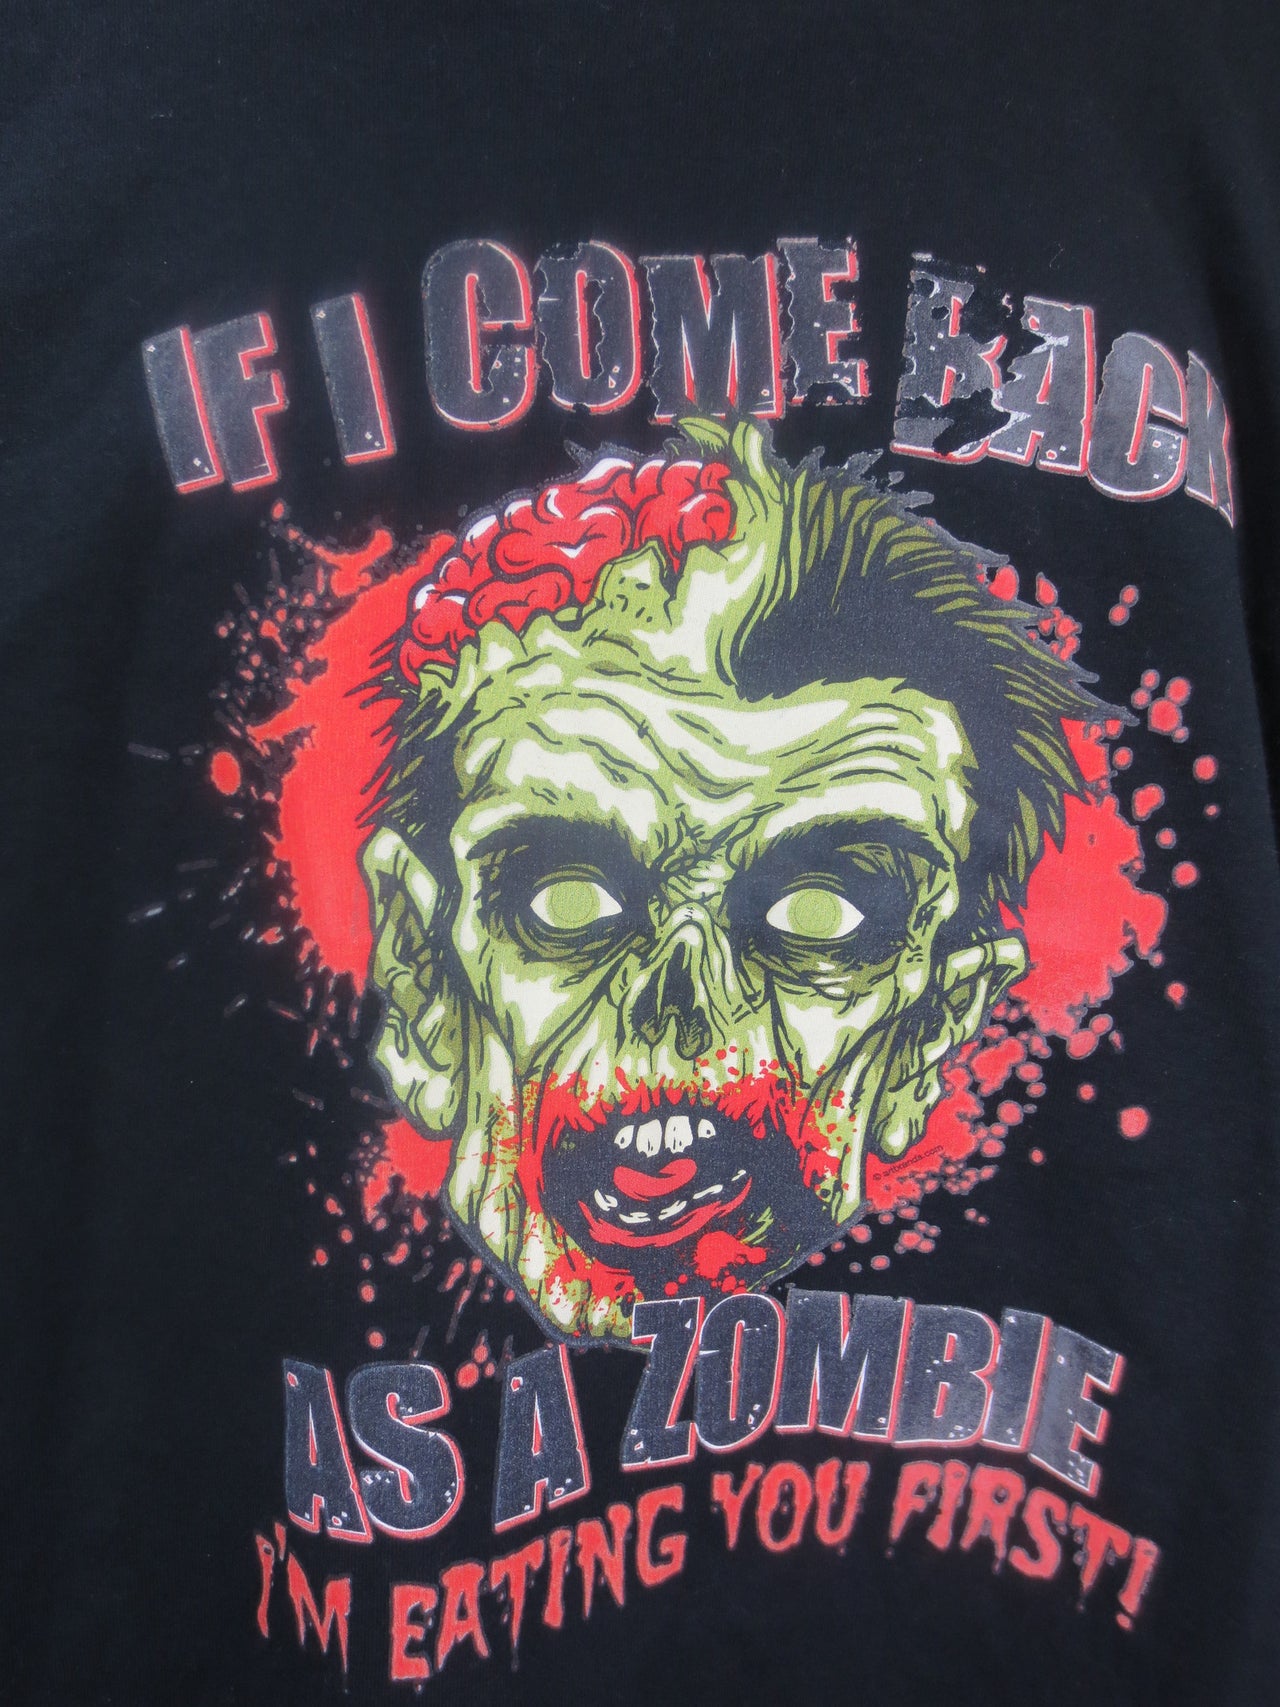 Im Eating You First Zombie tshirt - TshirtNow.net - 2